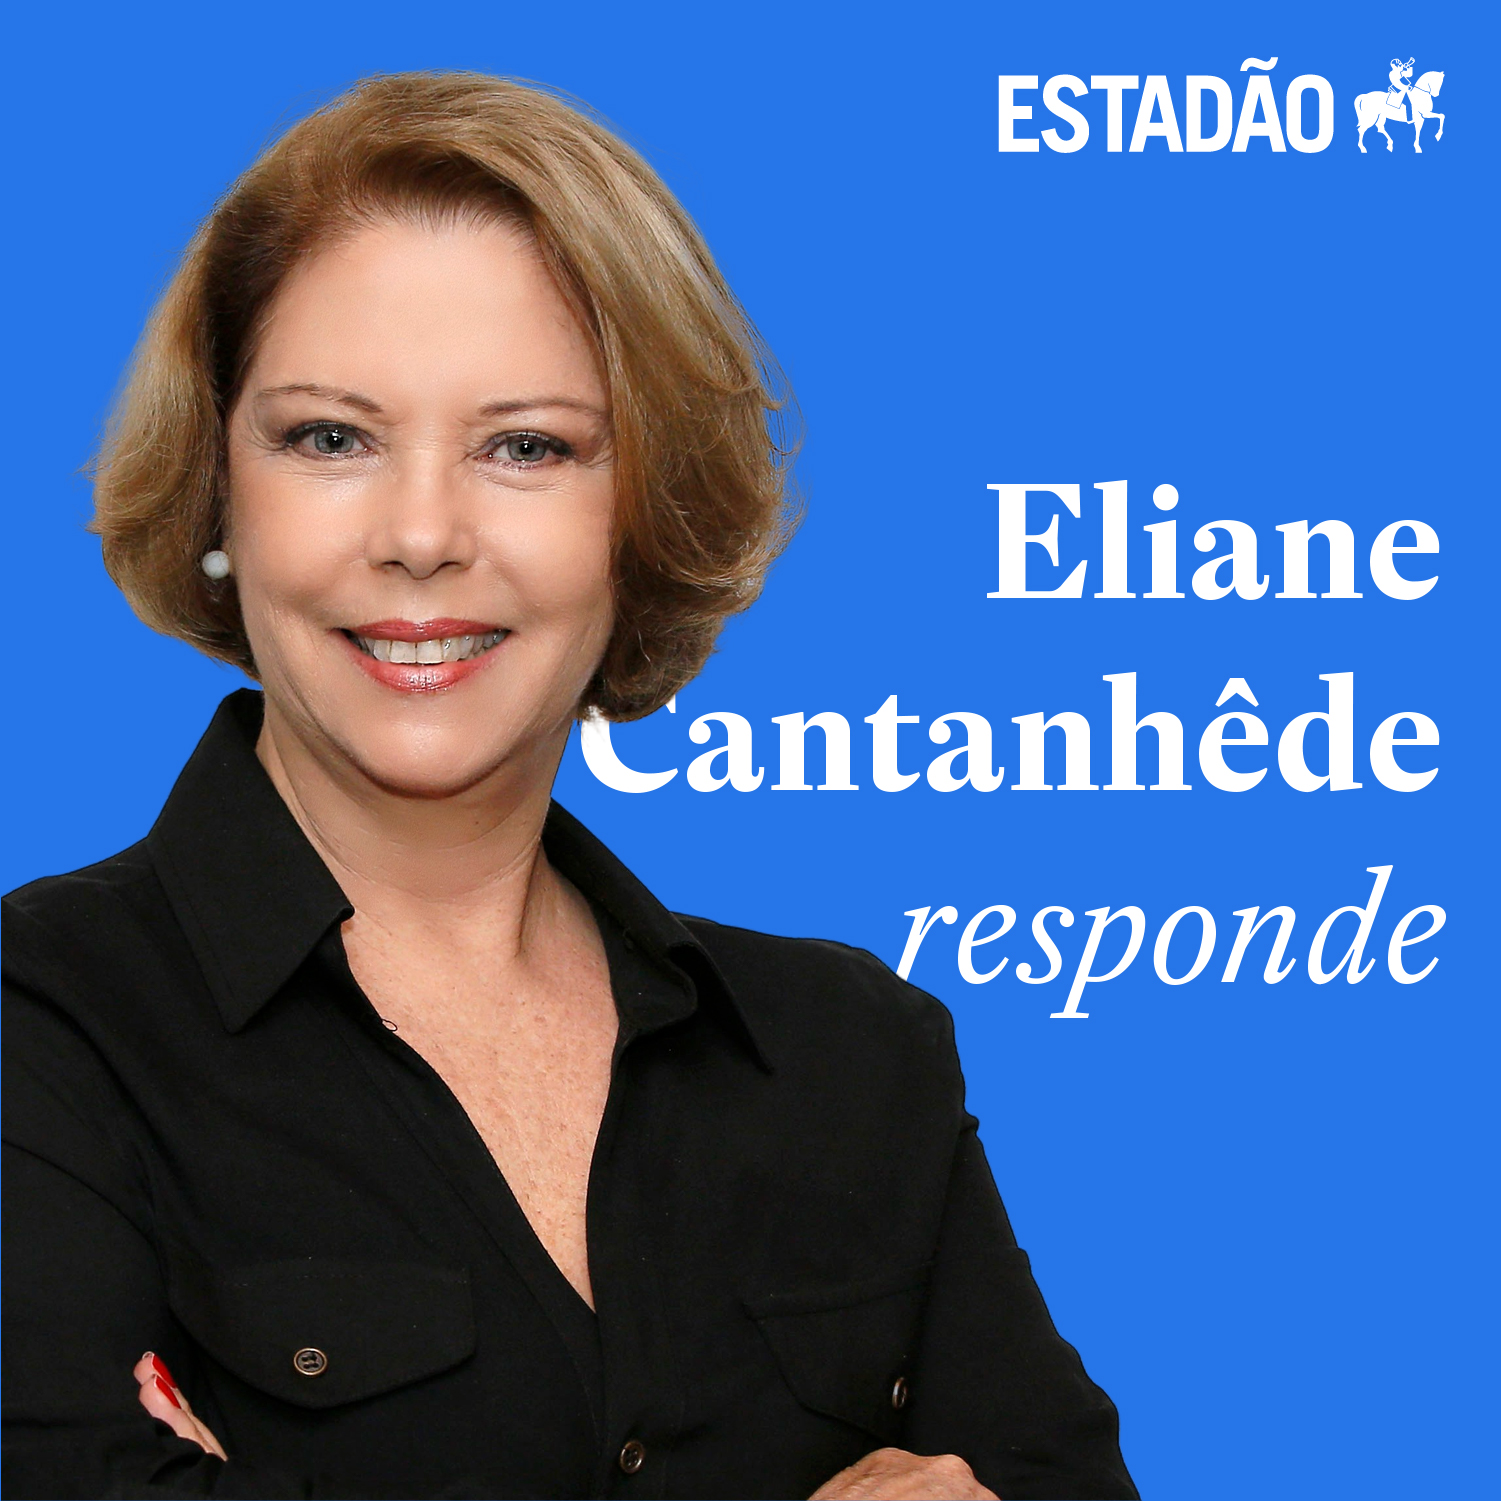 Eliane sobre ex-ministro em ato com o presidente: “Vence o prazo para a defesa de Pazzuelo”